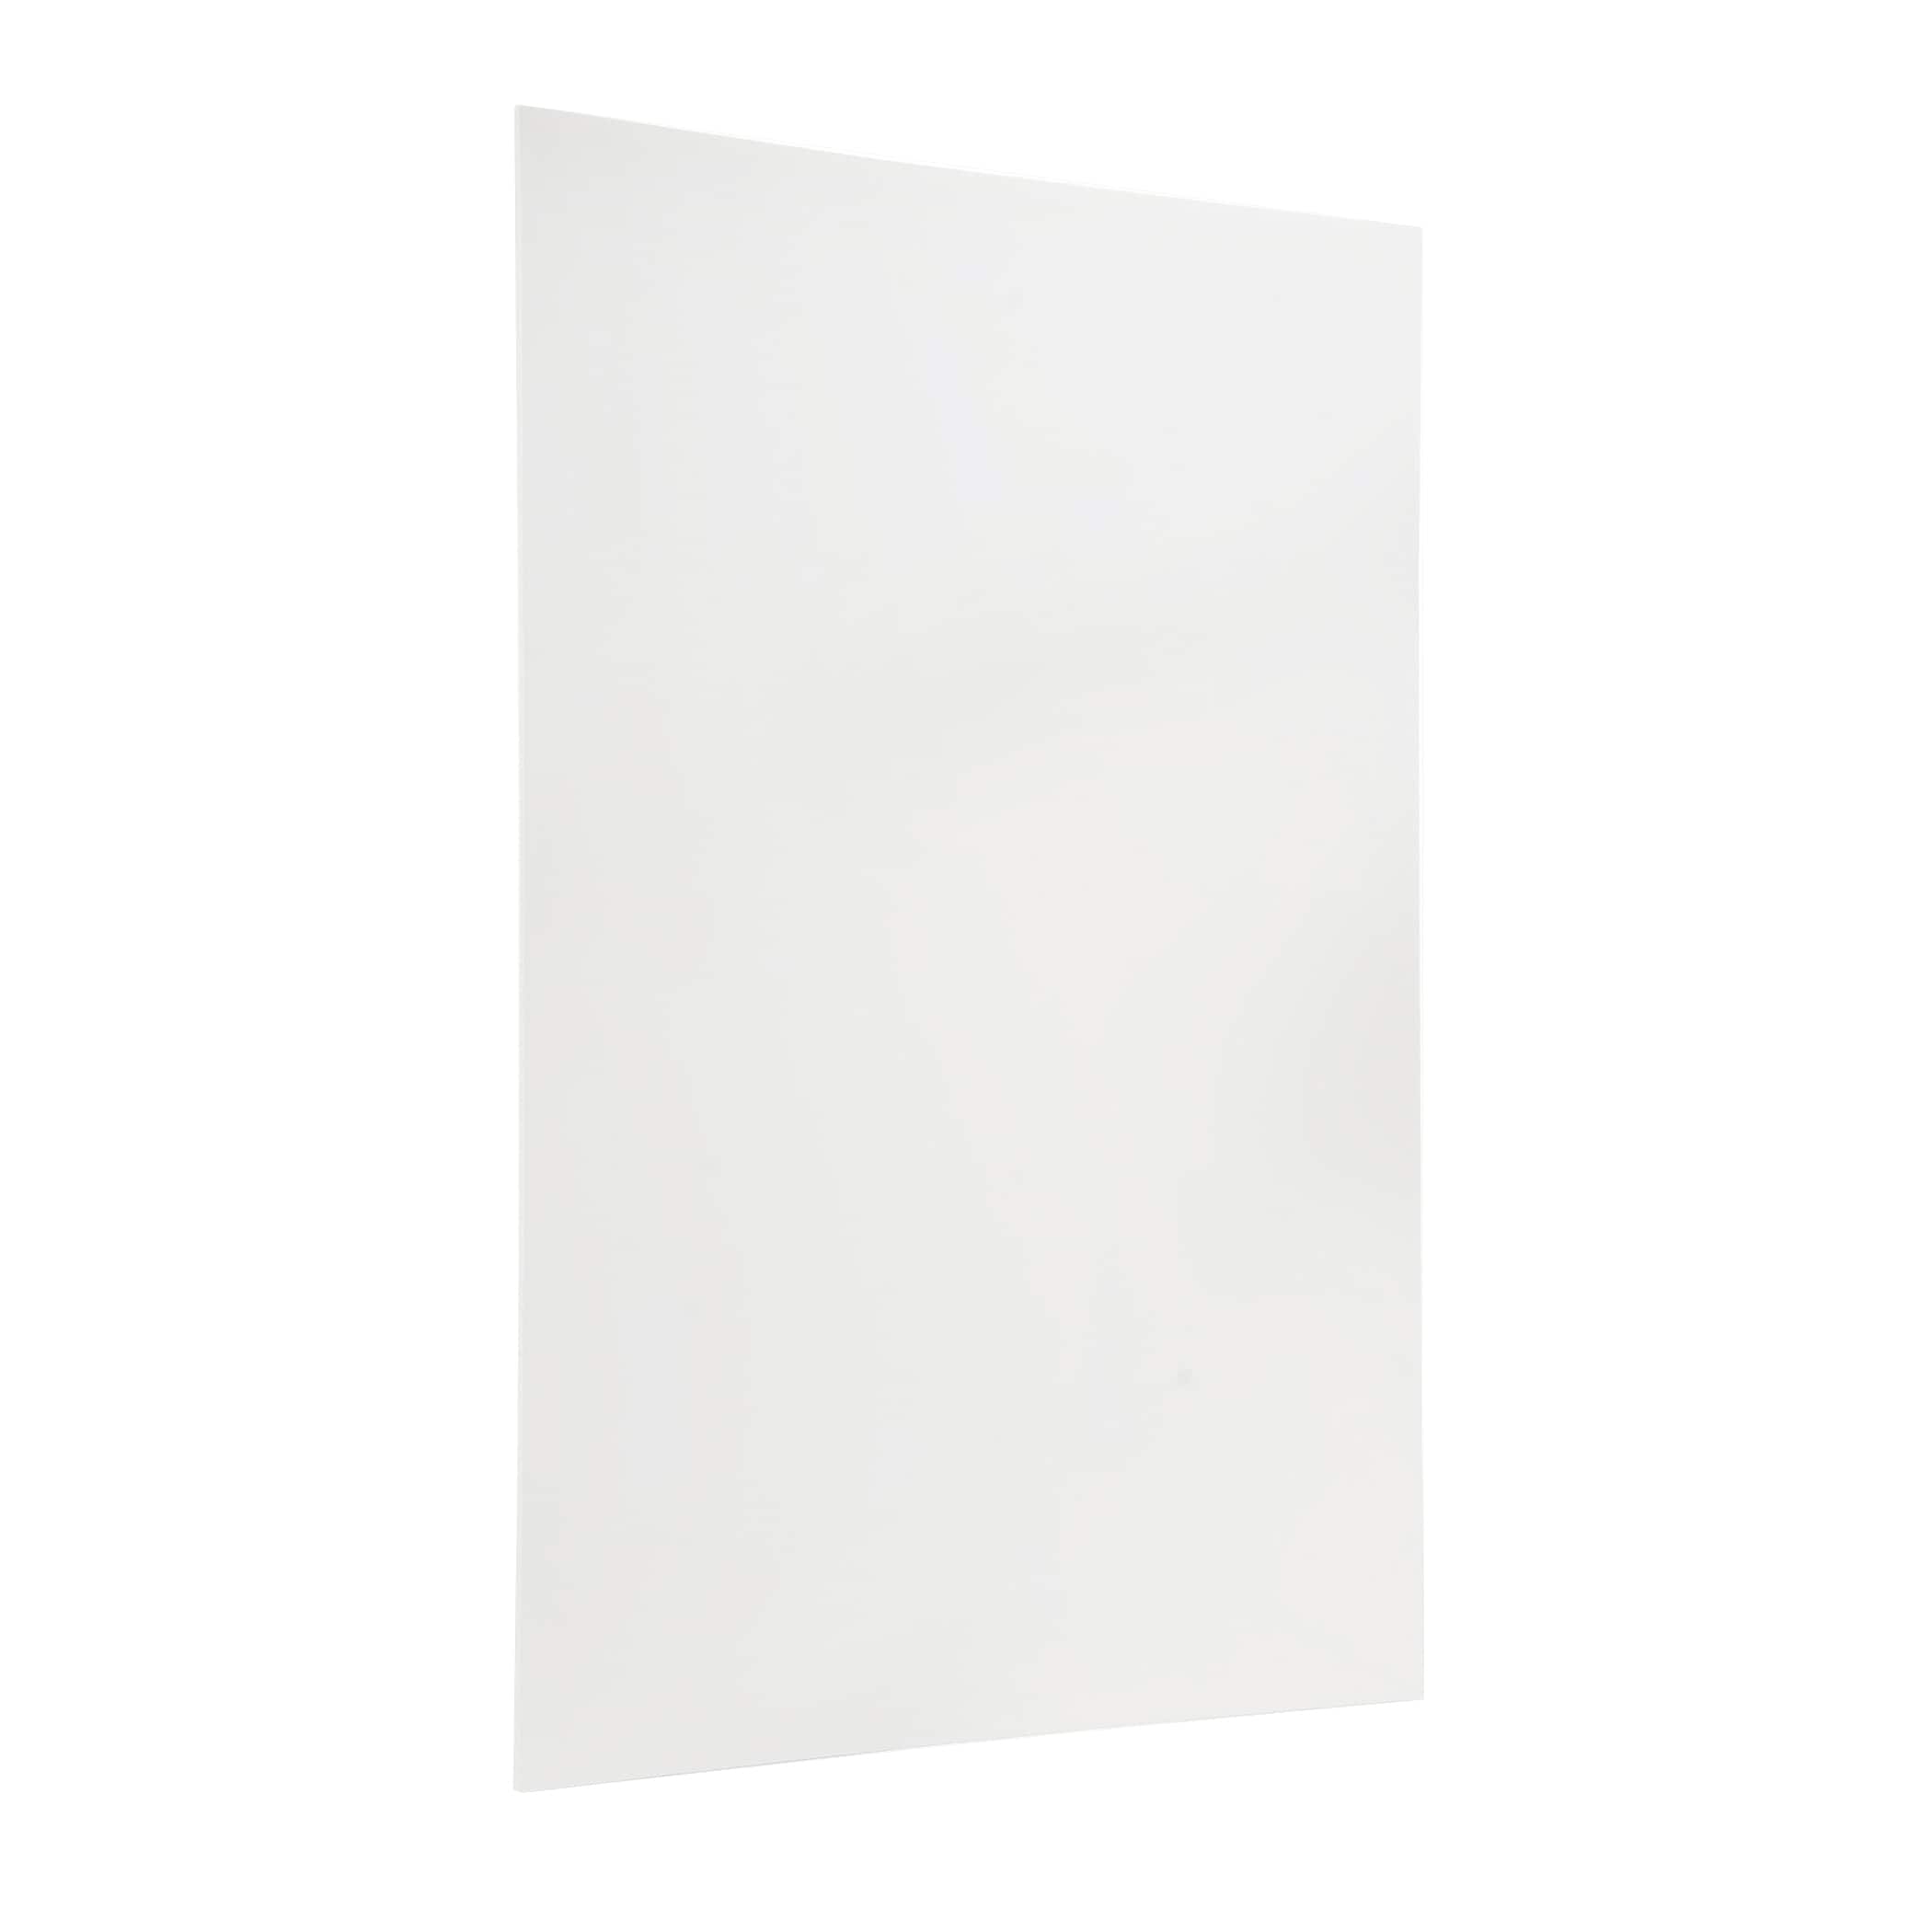 20 x 30 White Foam Board Sheets, 10 Pack